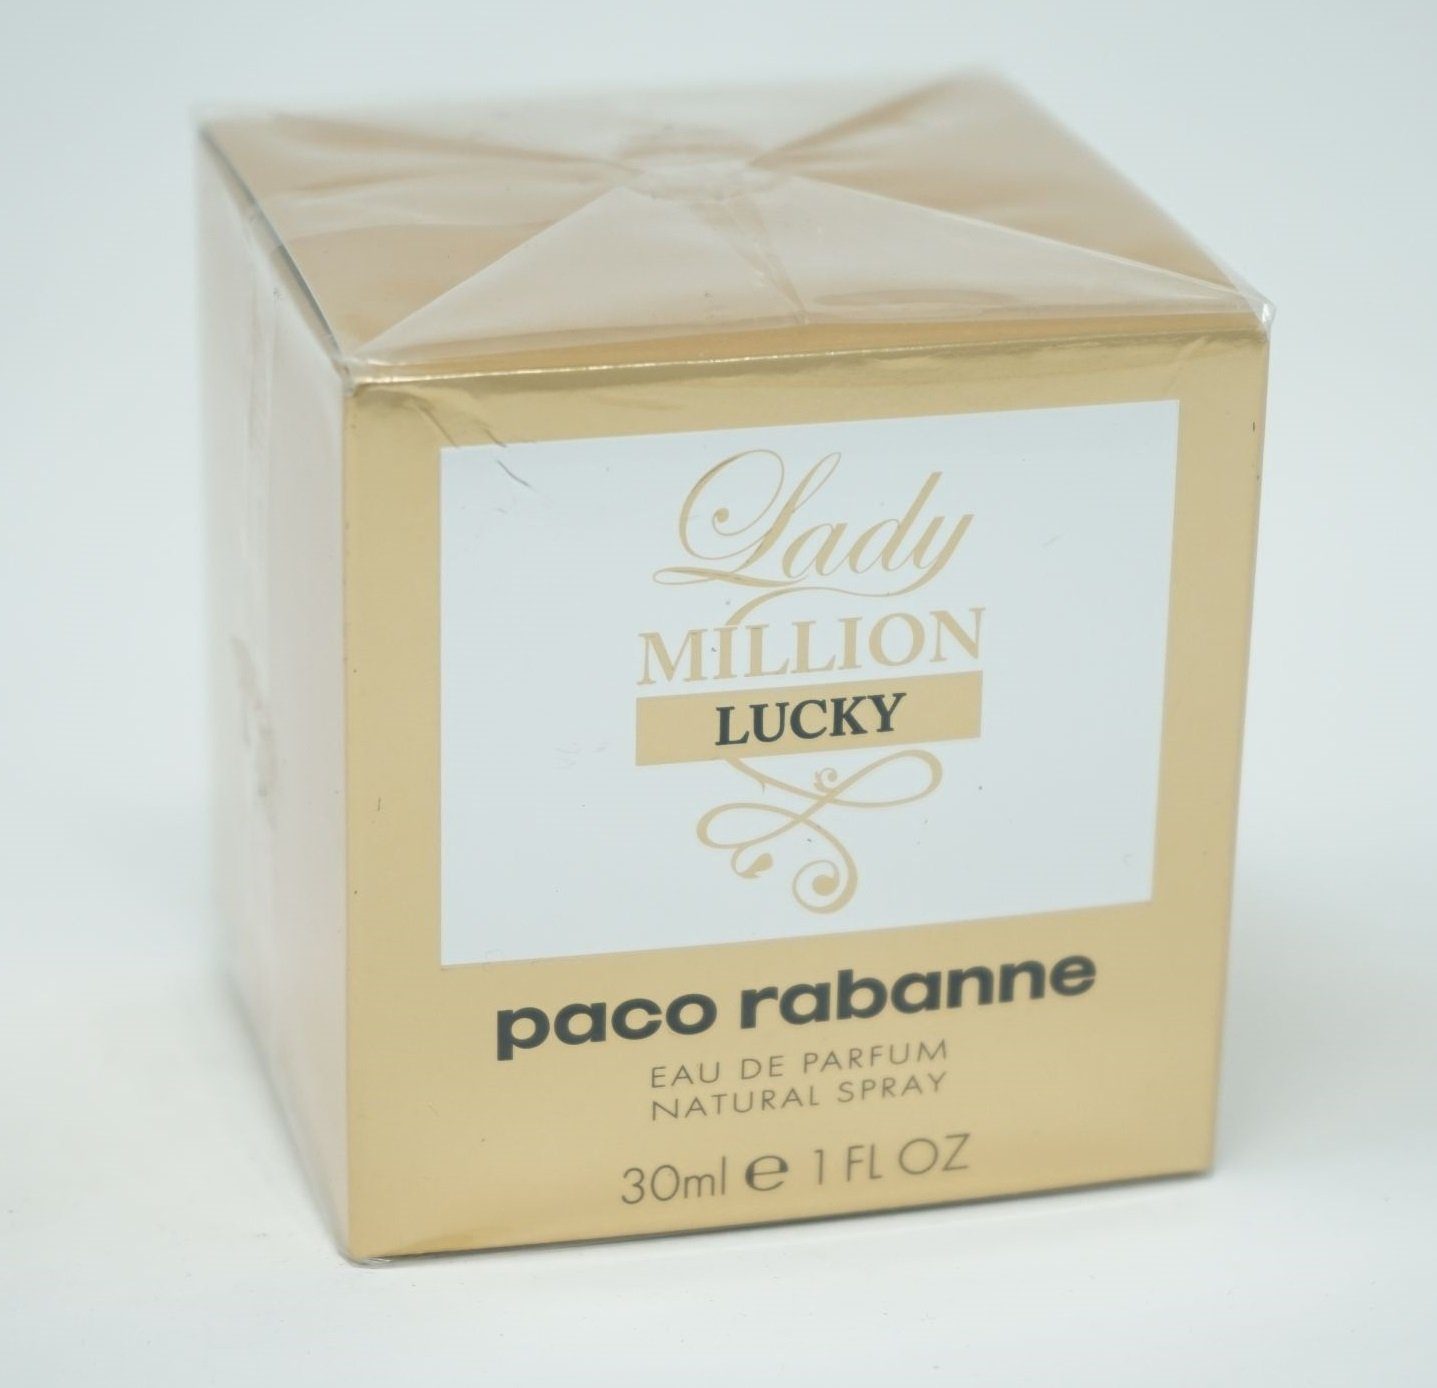 paco rabanne Eau de Parfum Paco Rabanne Lady Million Lucky Eau de Parfum Spray 30ml | Eau de Parfum